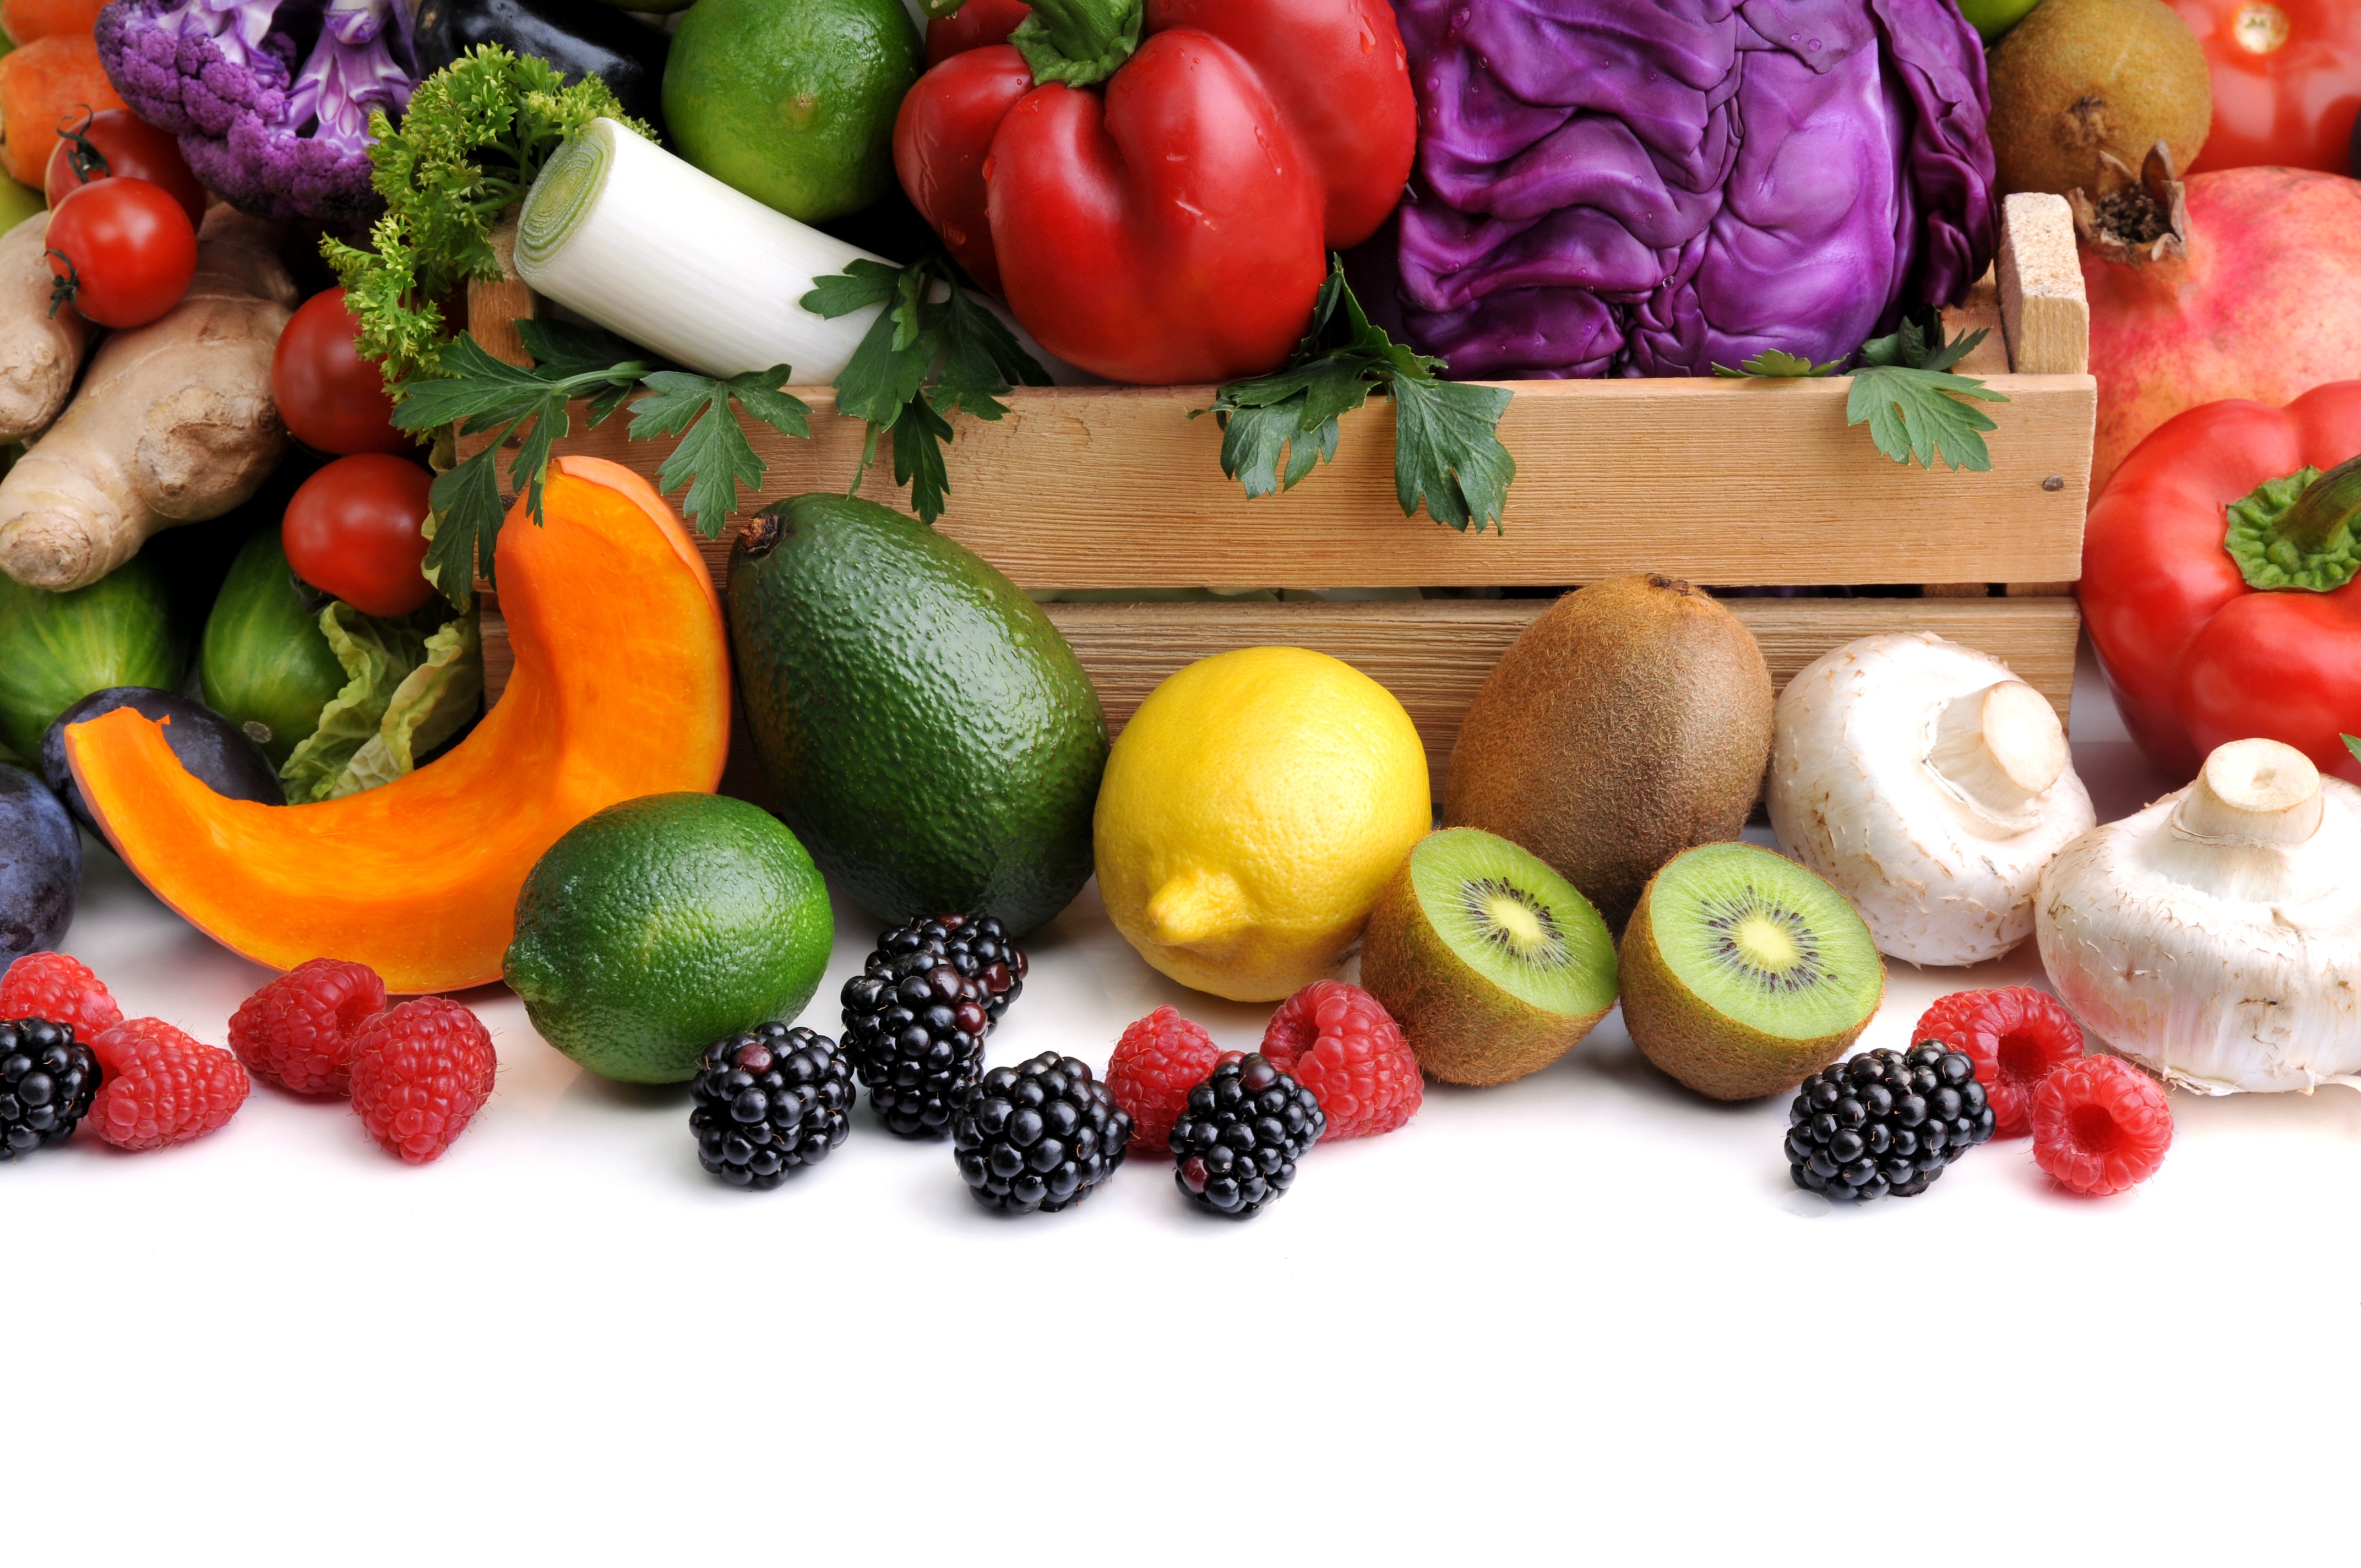 Овощи фрукты на белом фоне фото